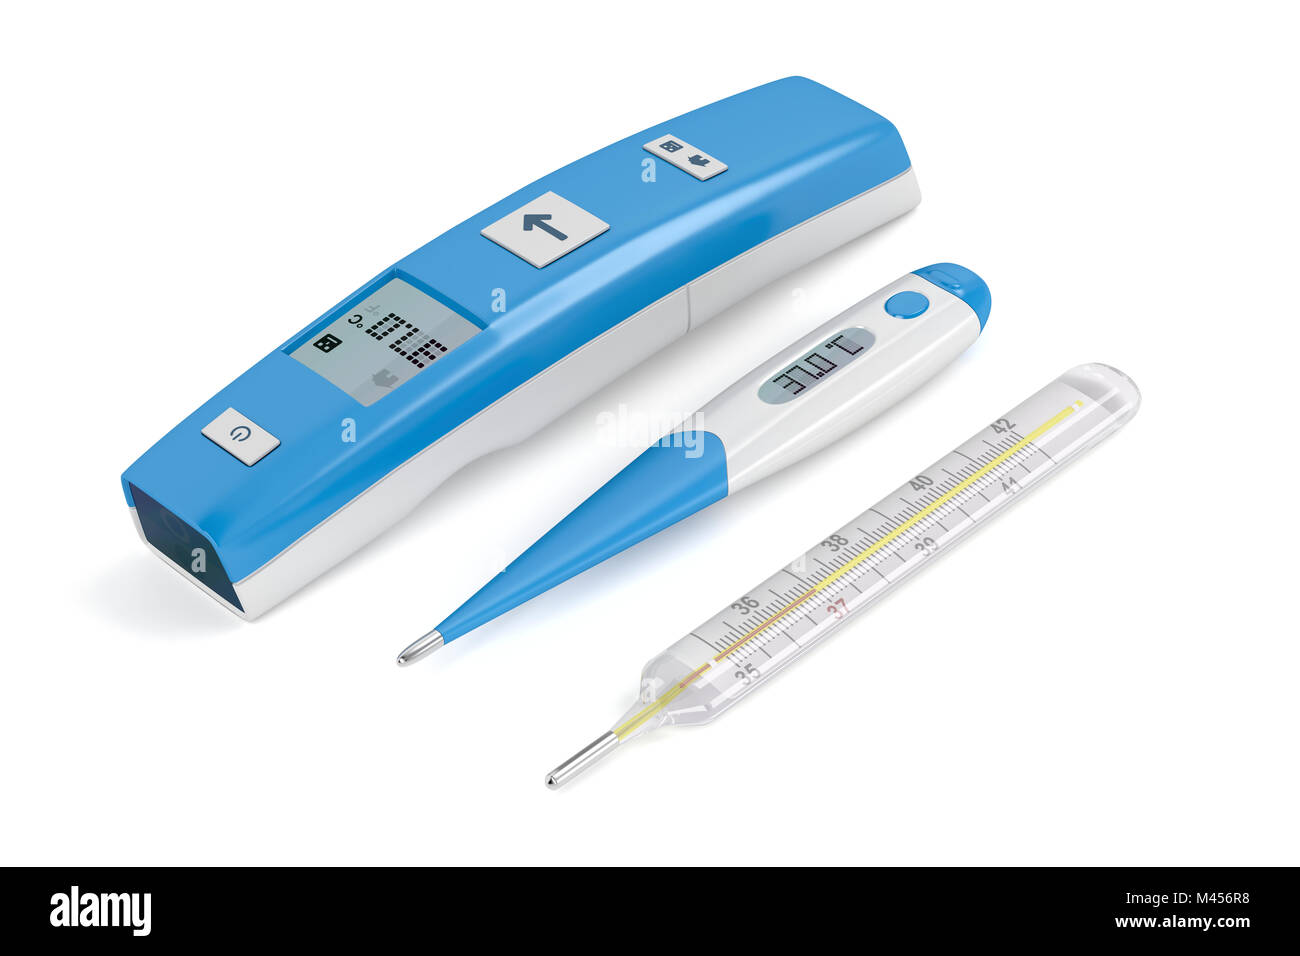 Trois différents types de thermomètres médicaux sur fond blanc Photo Stock  - Alamy